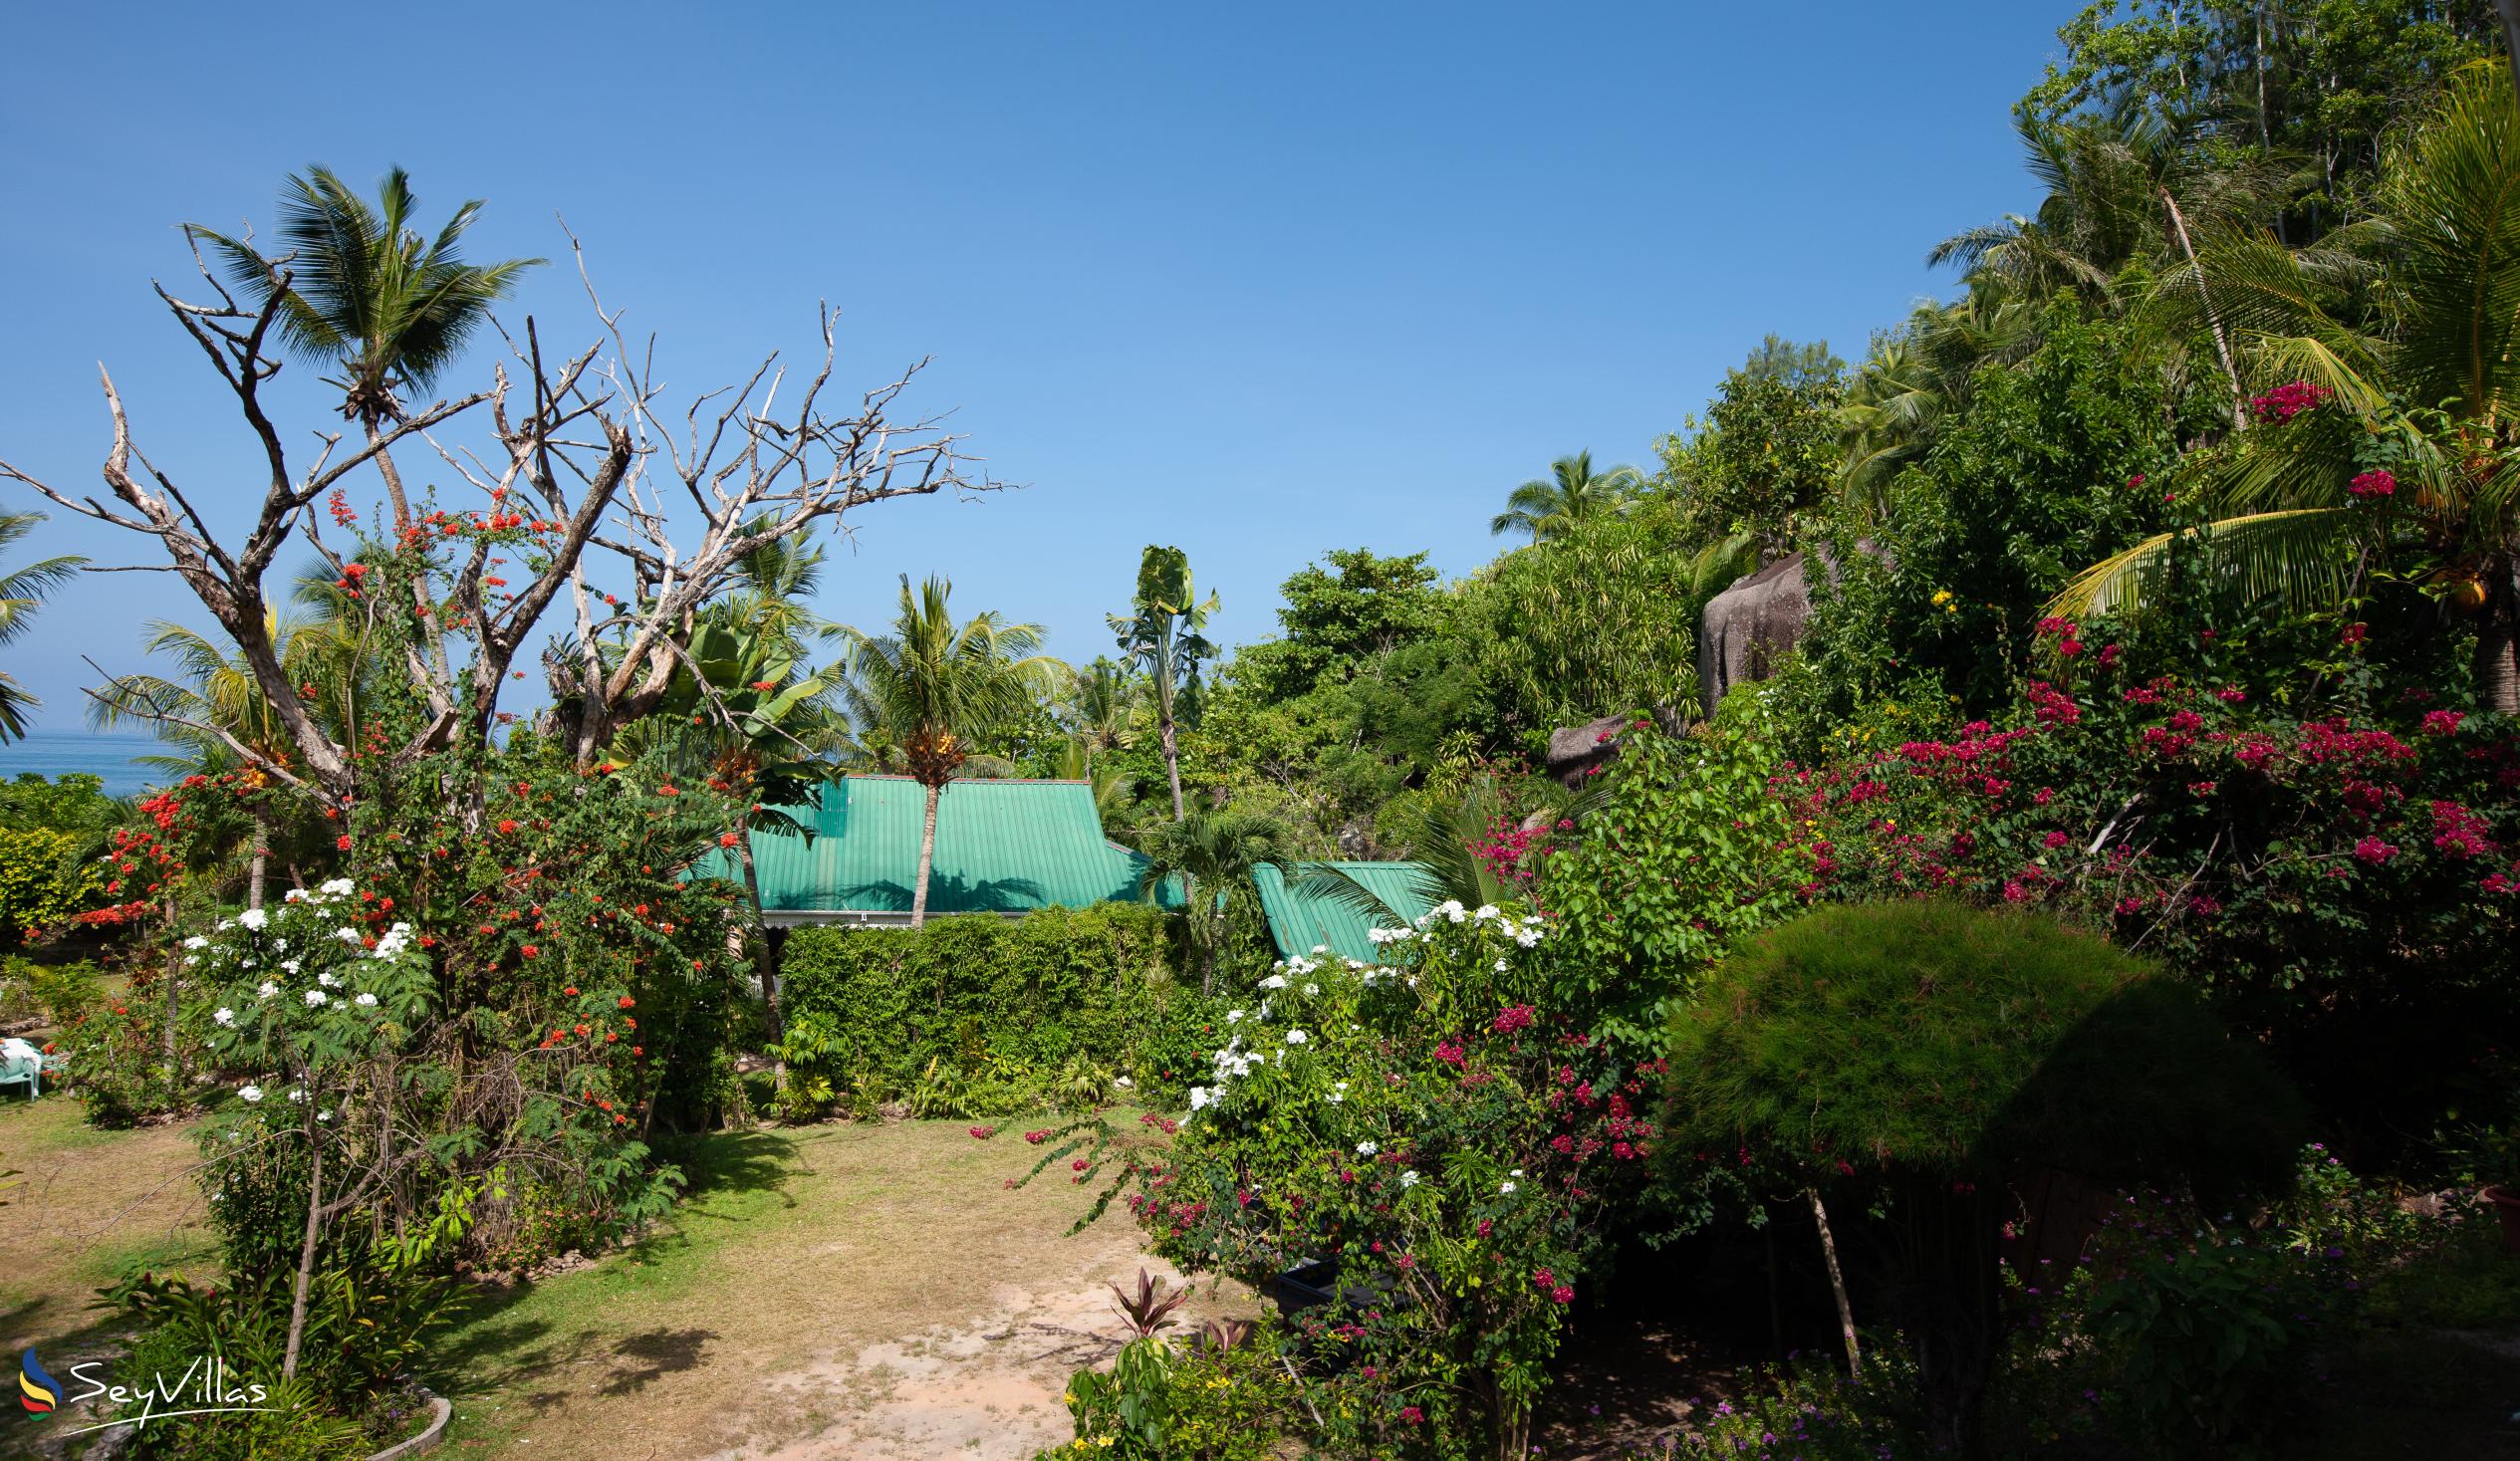 Foto 20: Villas du Voyageur - Aussenbereich - Praslin (Seychellen)